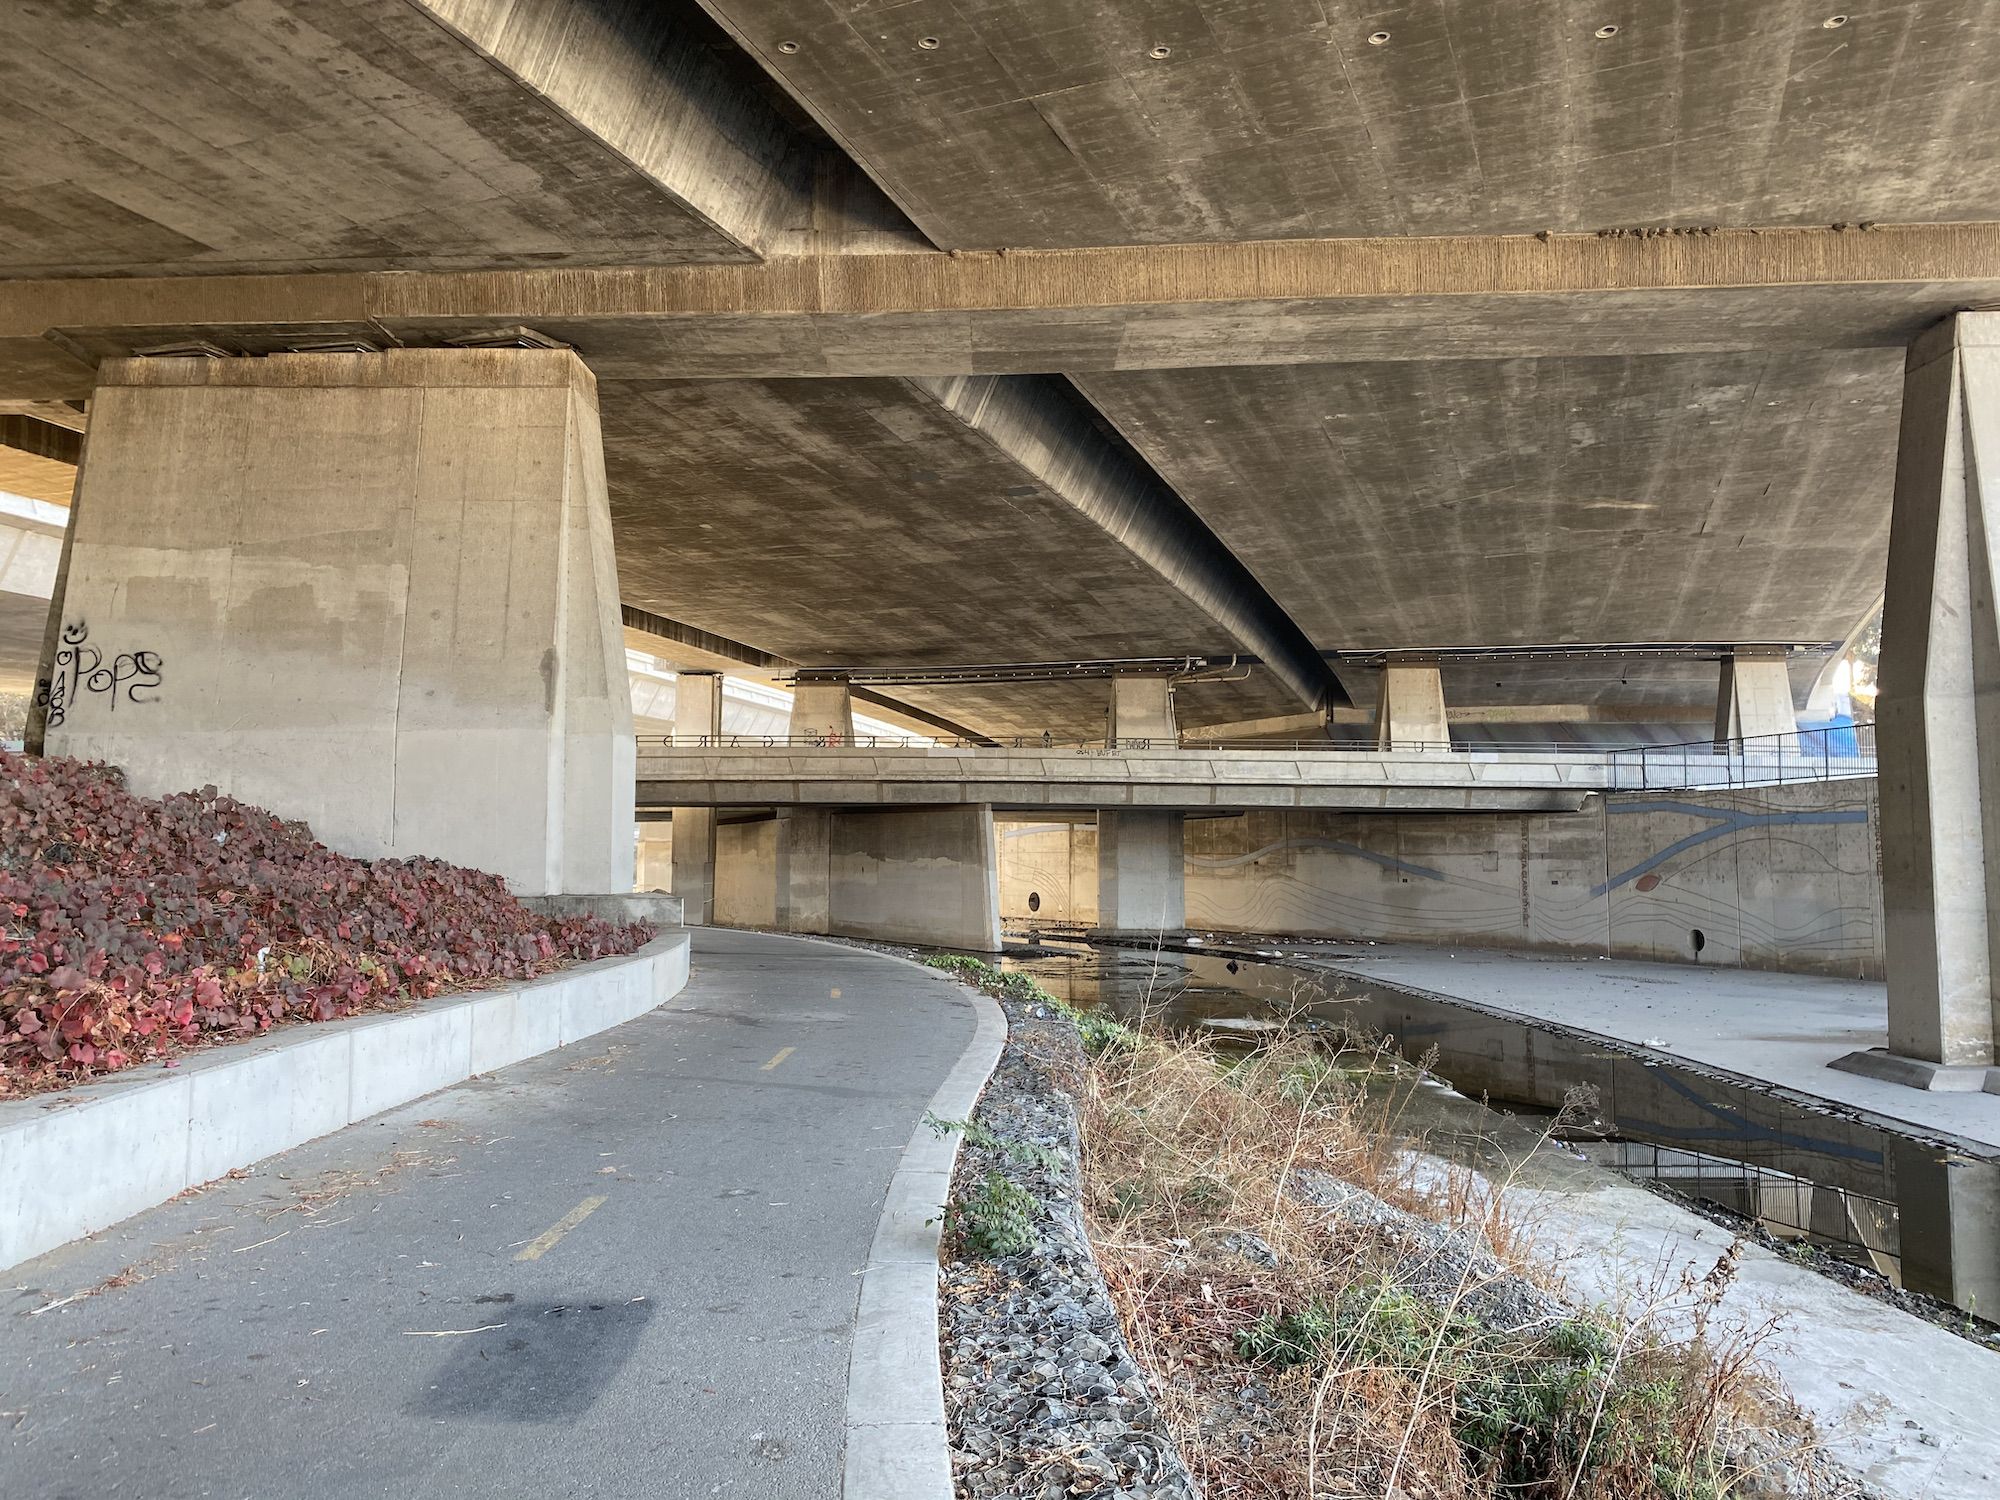 A bike path under the 87 in San Jose